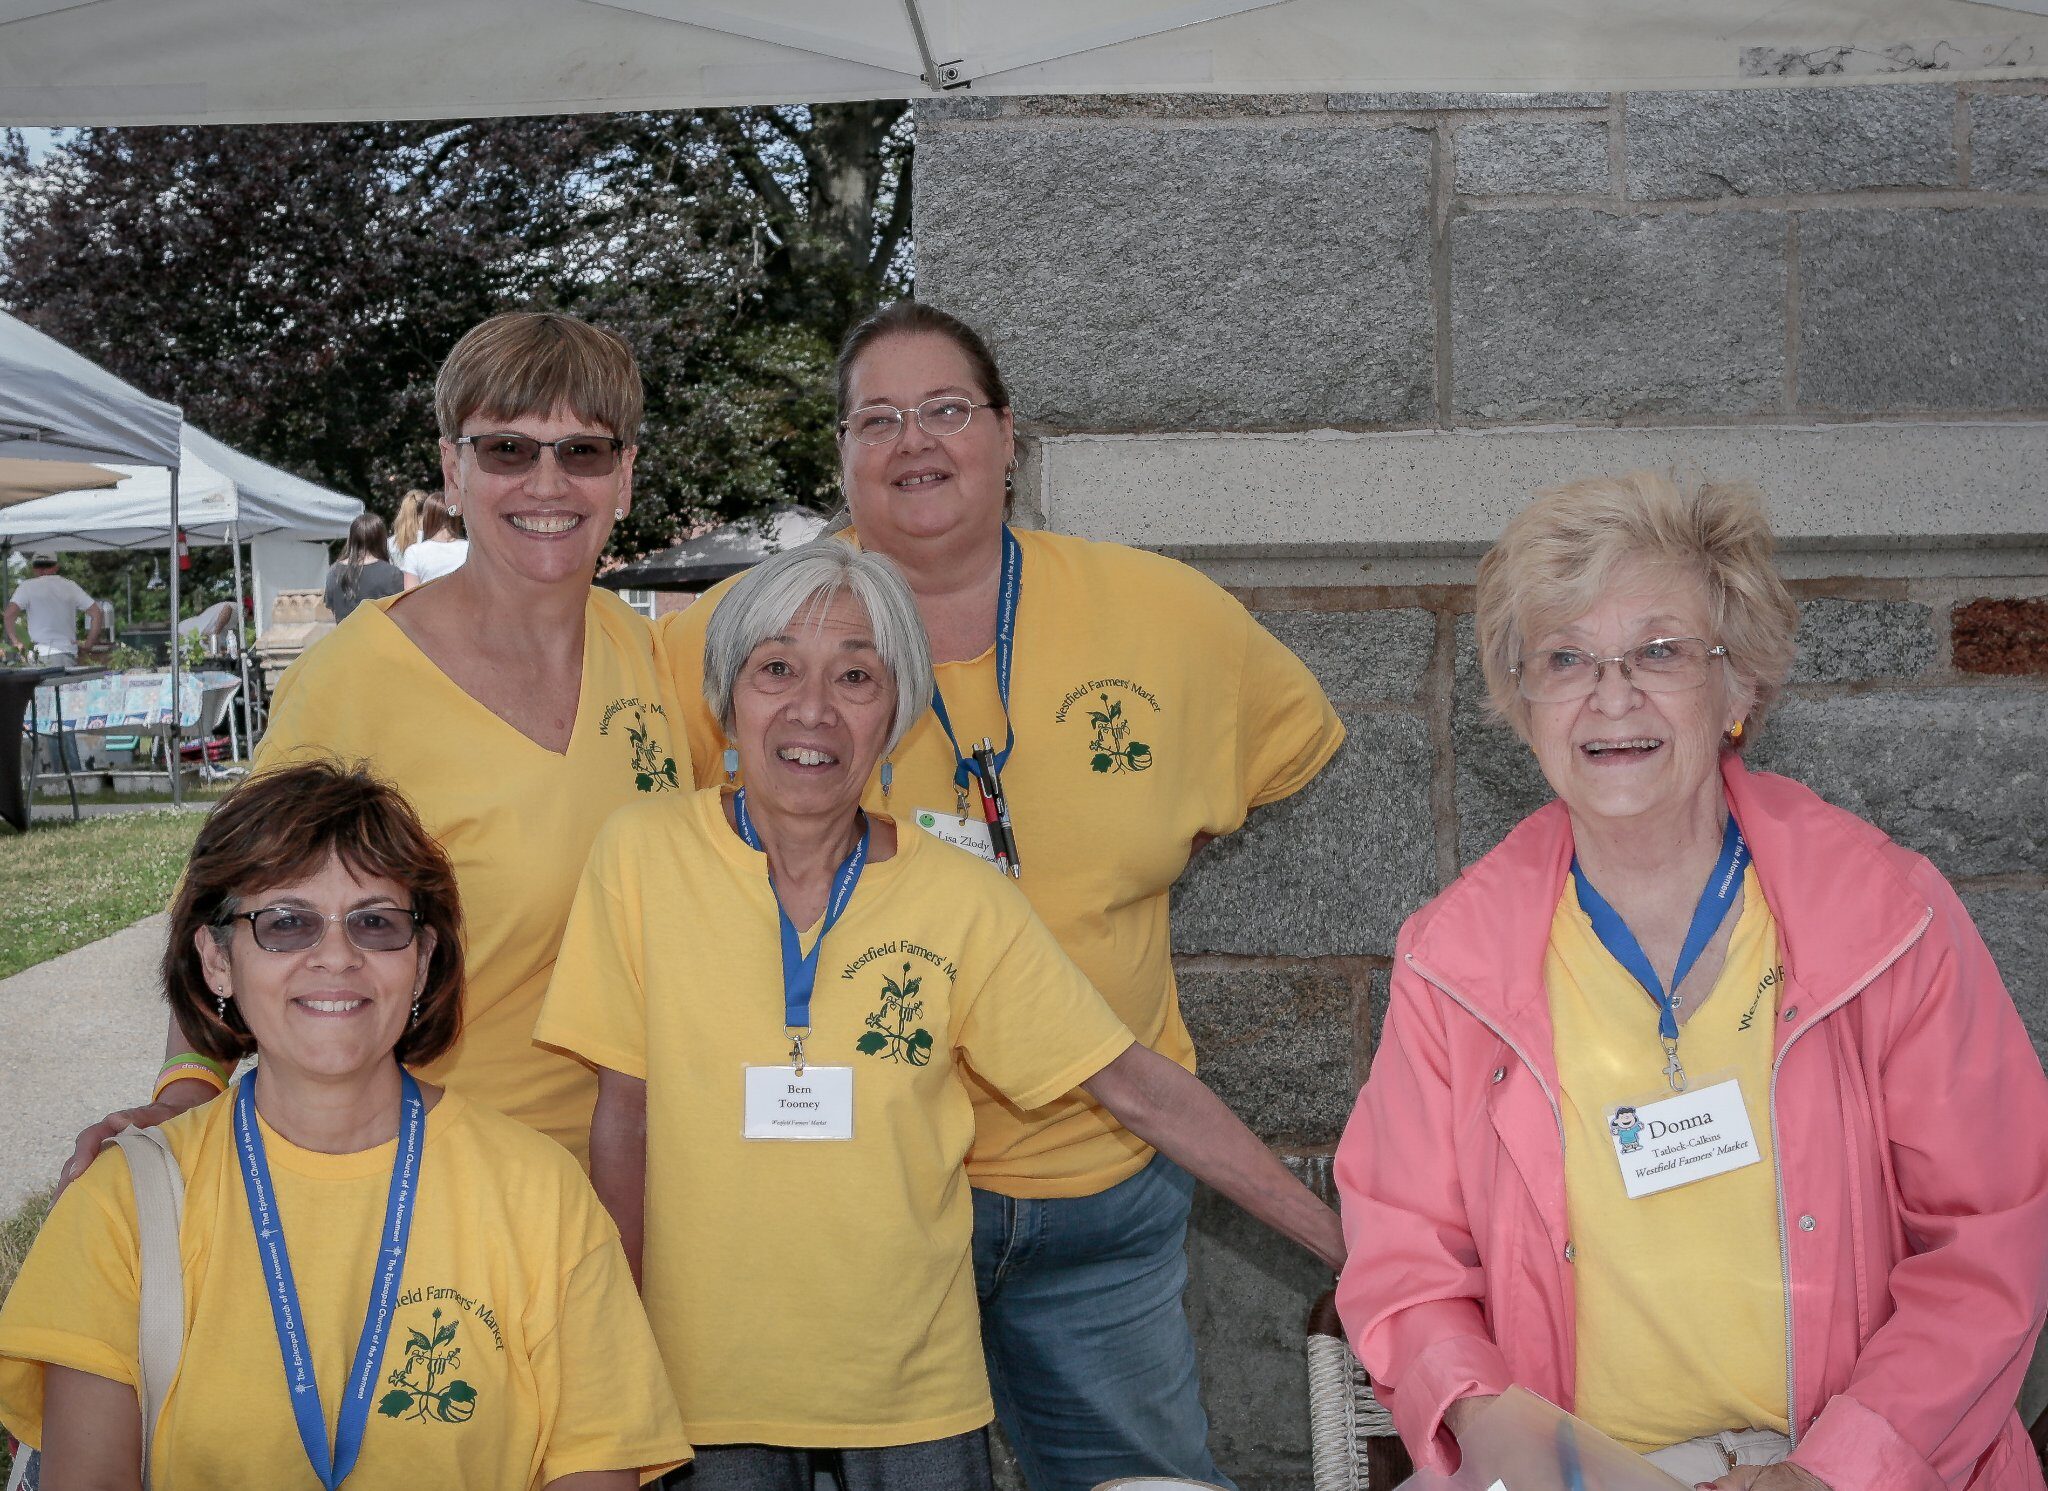 five smiling women wearing yellow t-shirts